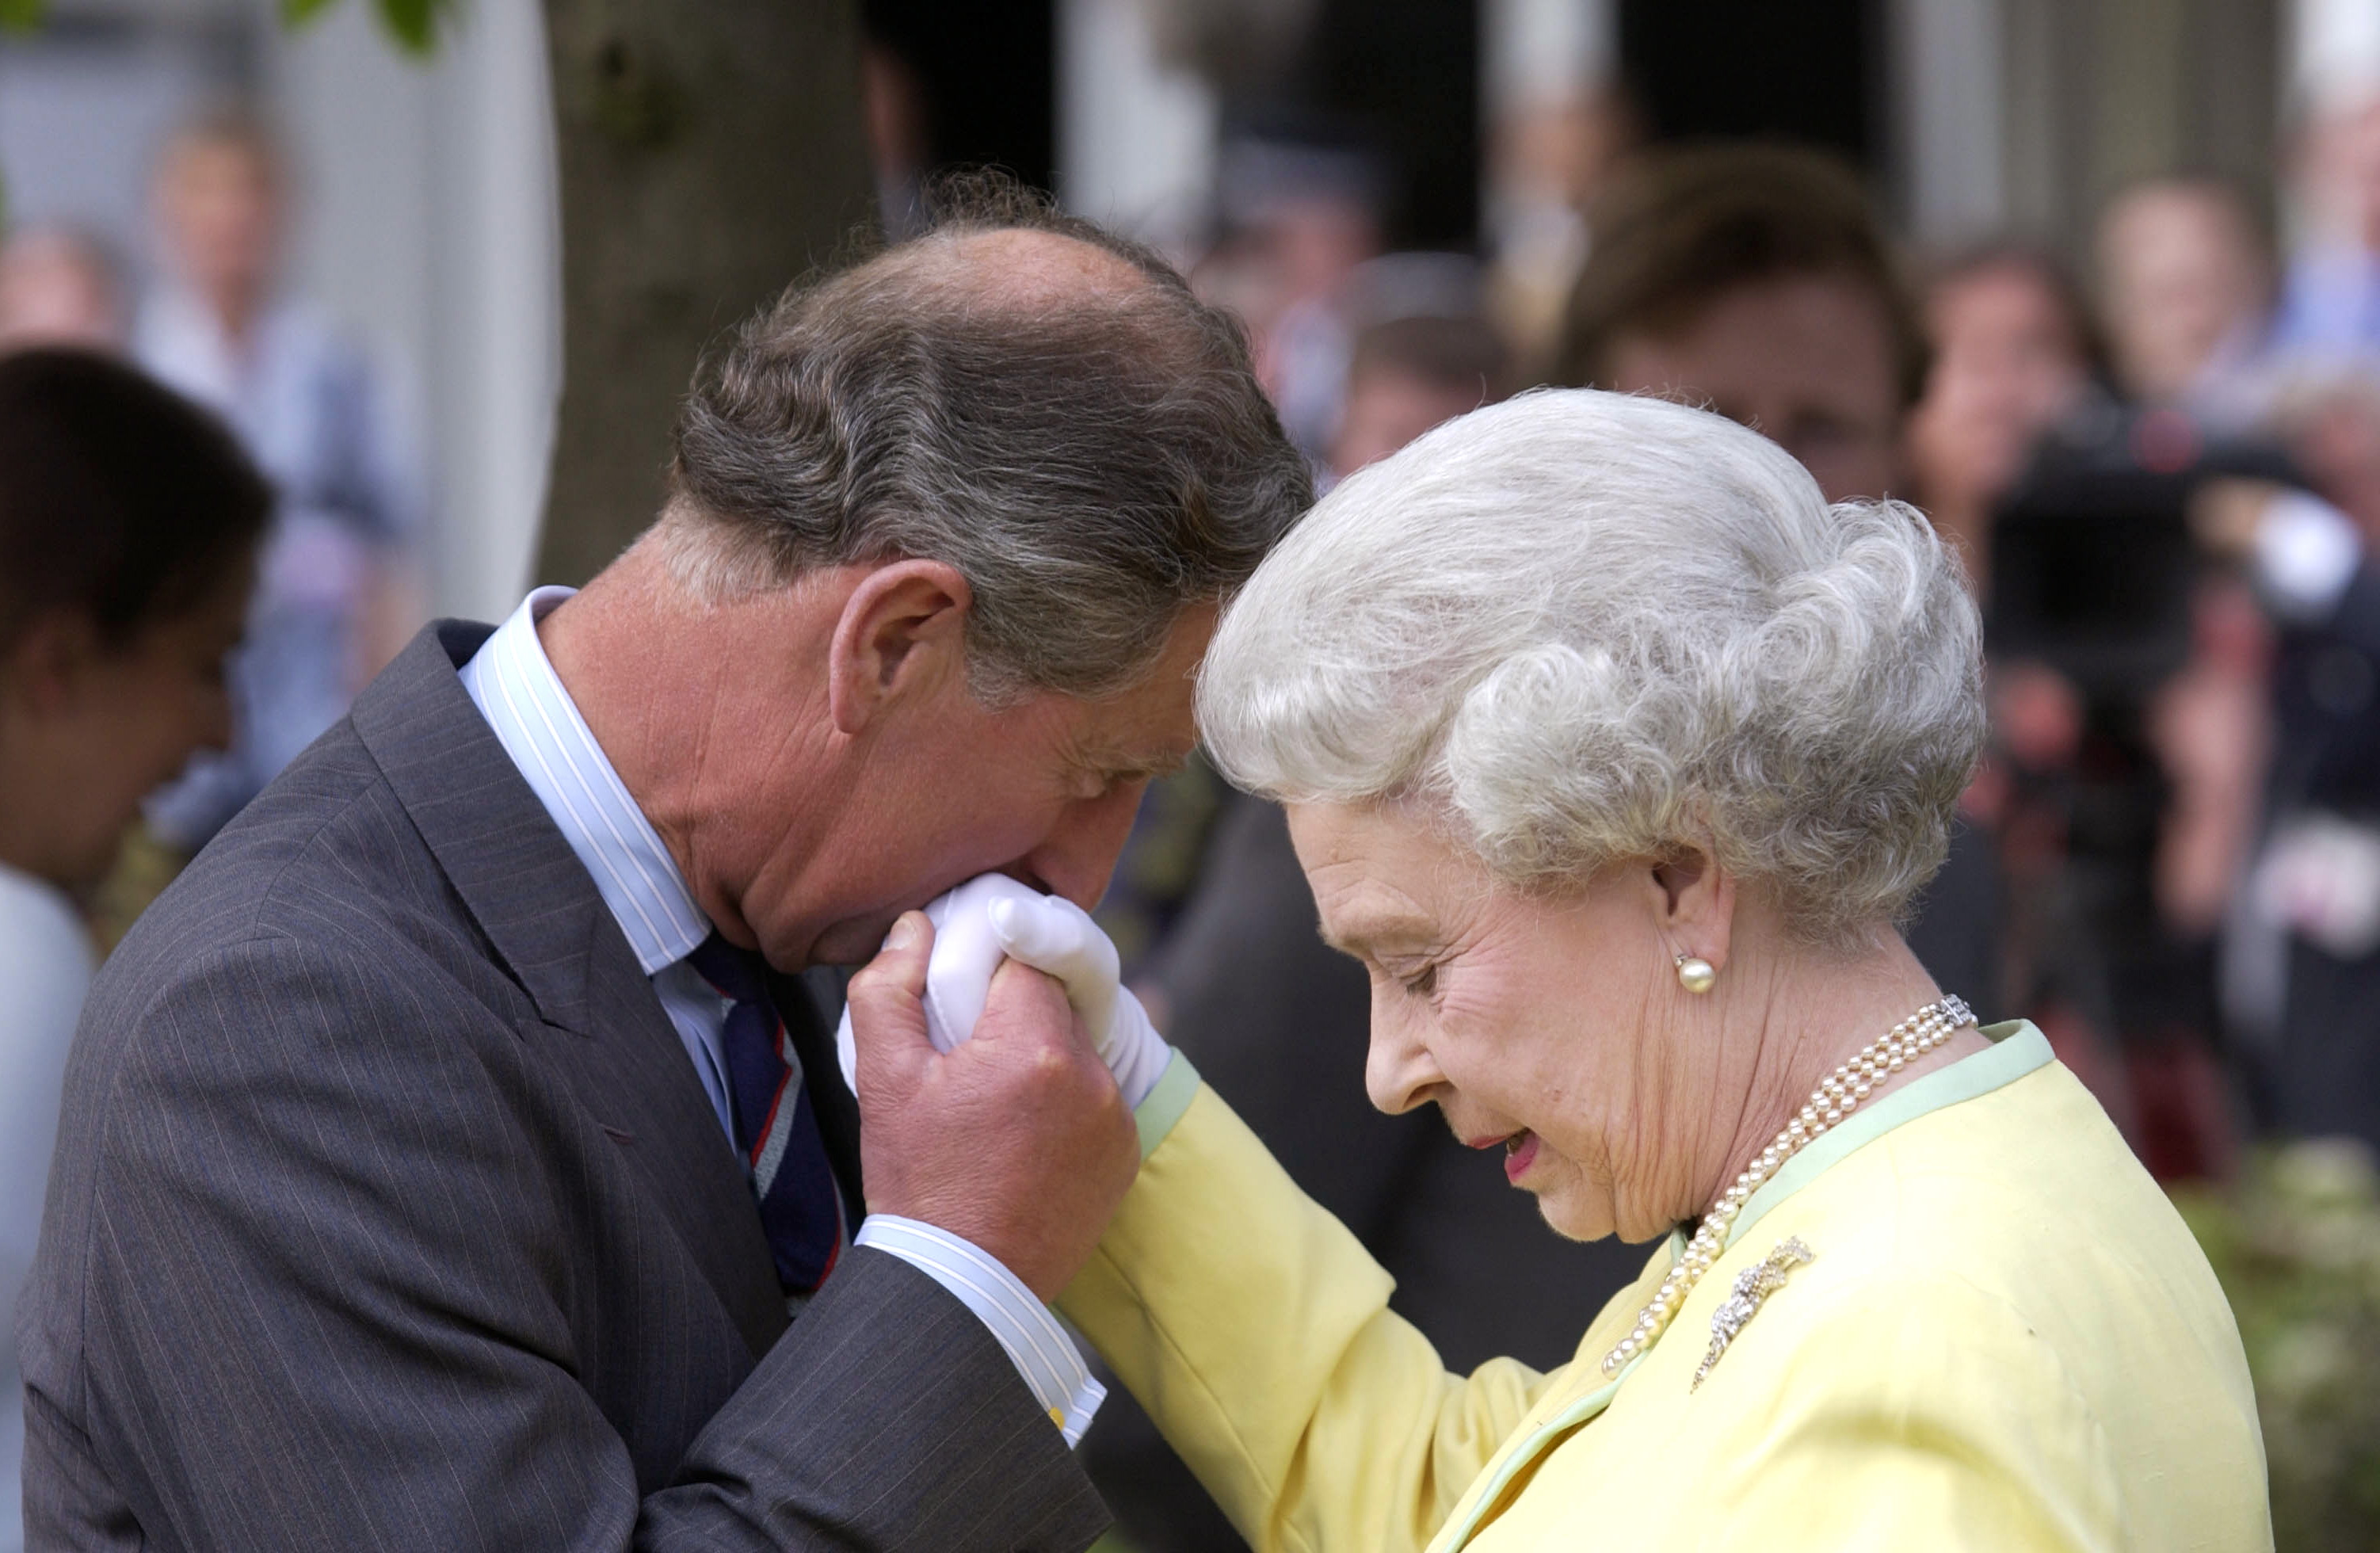 König Charles III., ehemaliger Prinz von Wales, küsst die Hand von Königin Elisabeth II. bei der Chelsea Flower Show 2002: Getty Images